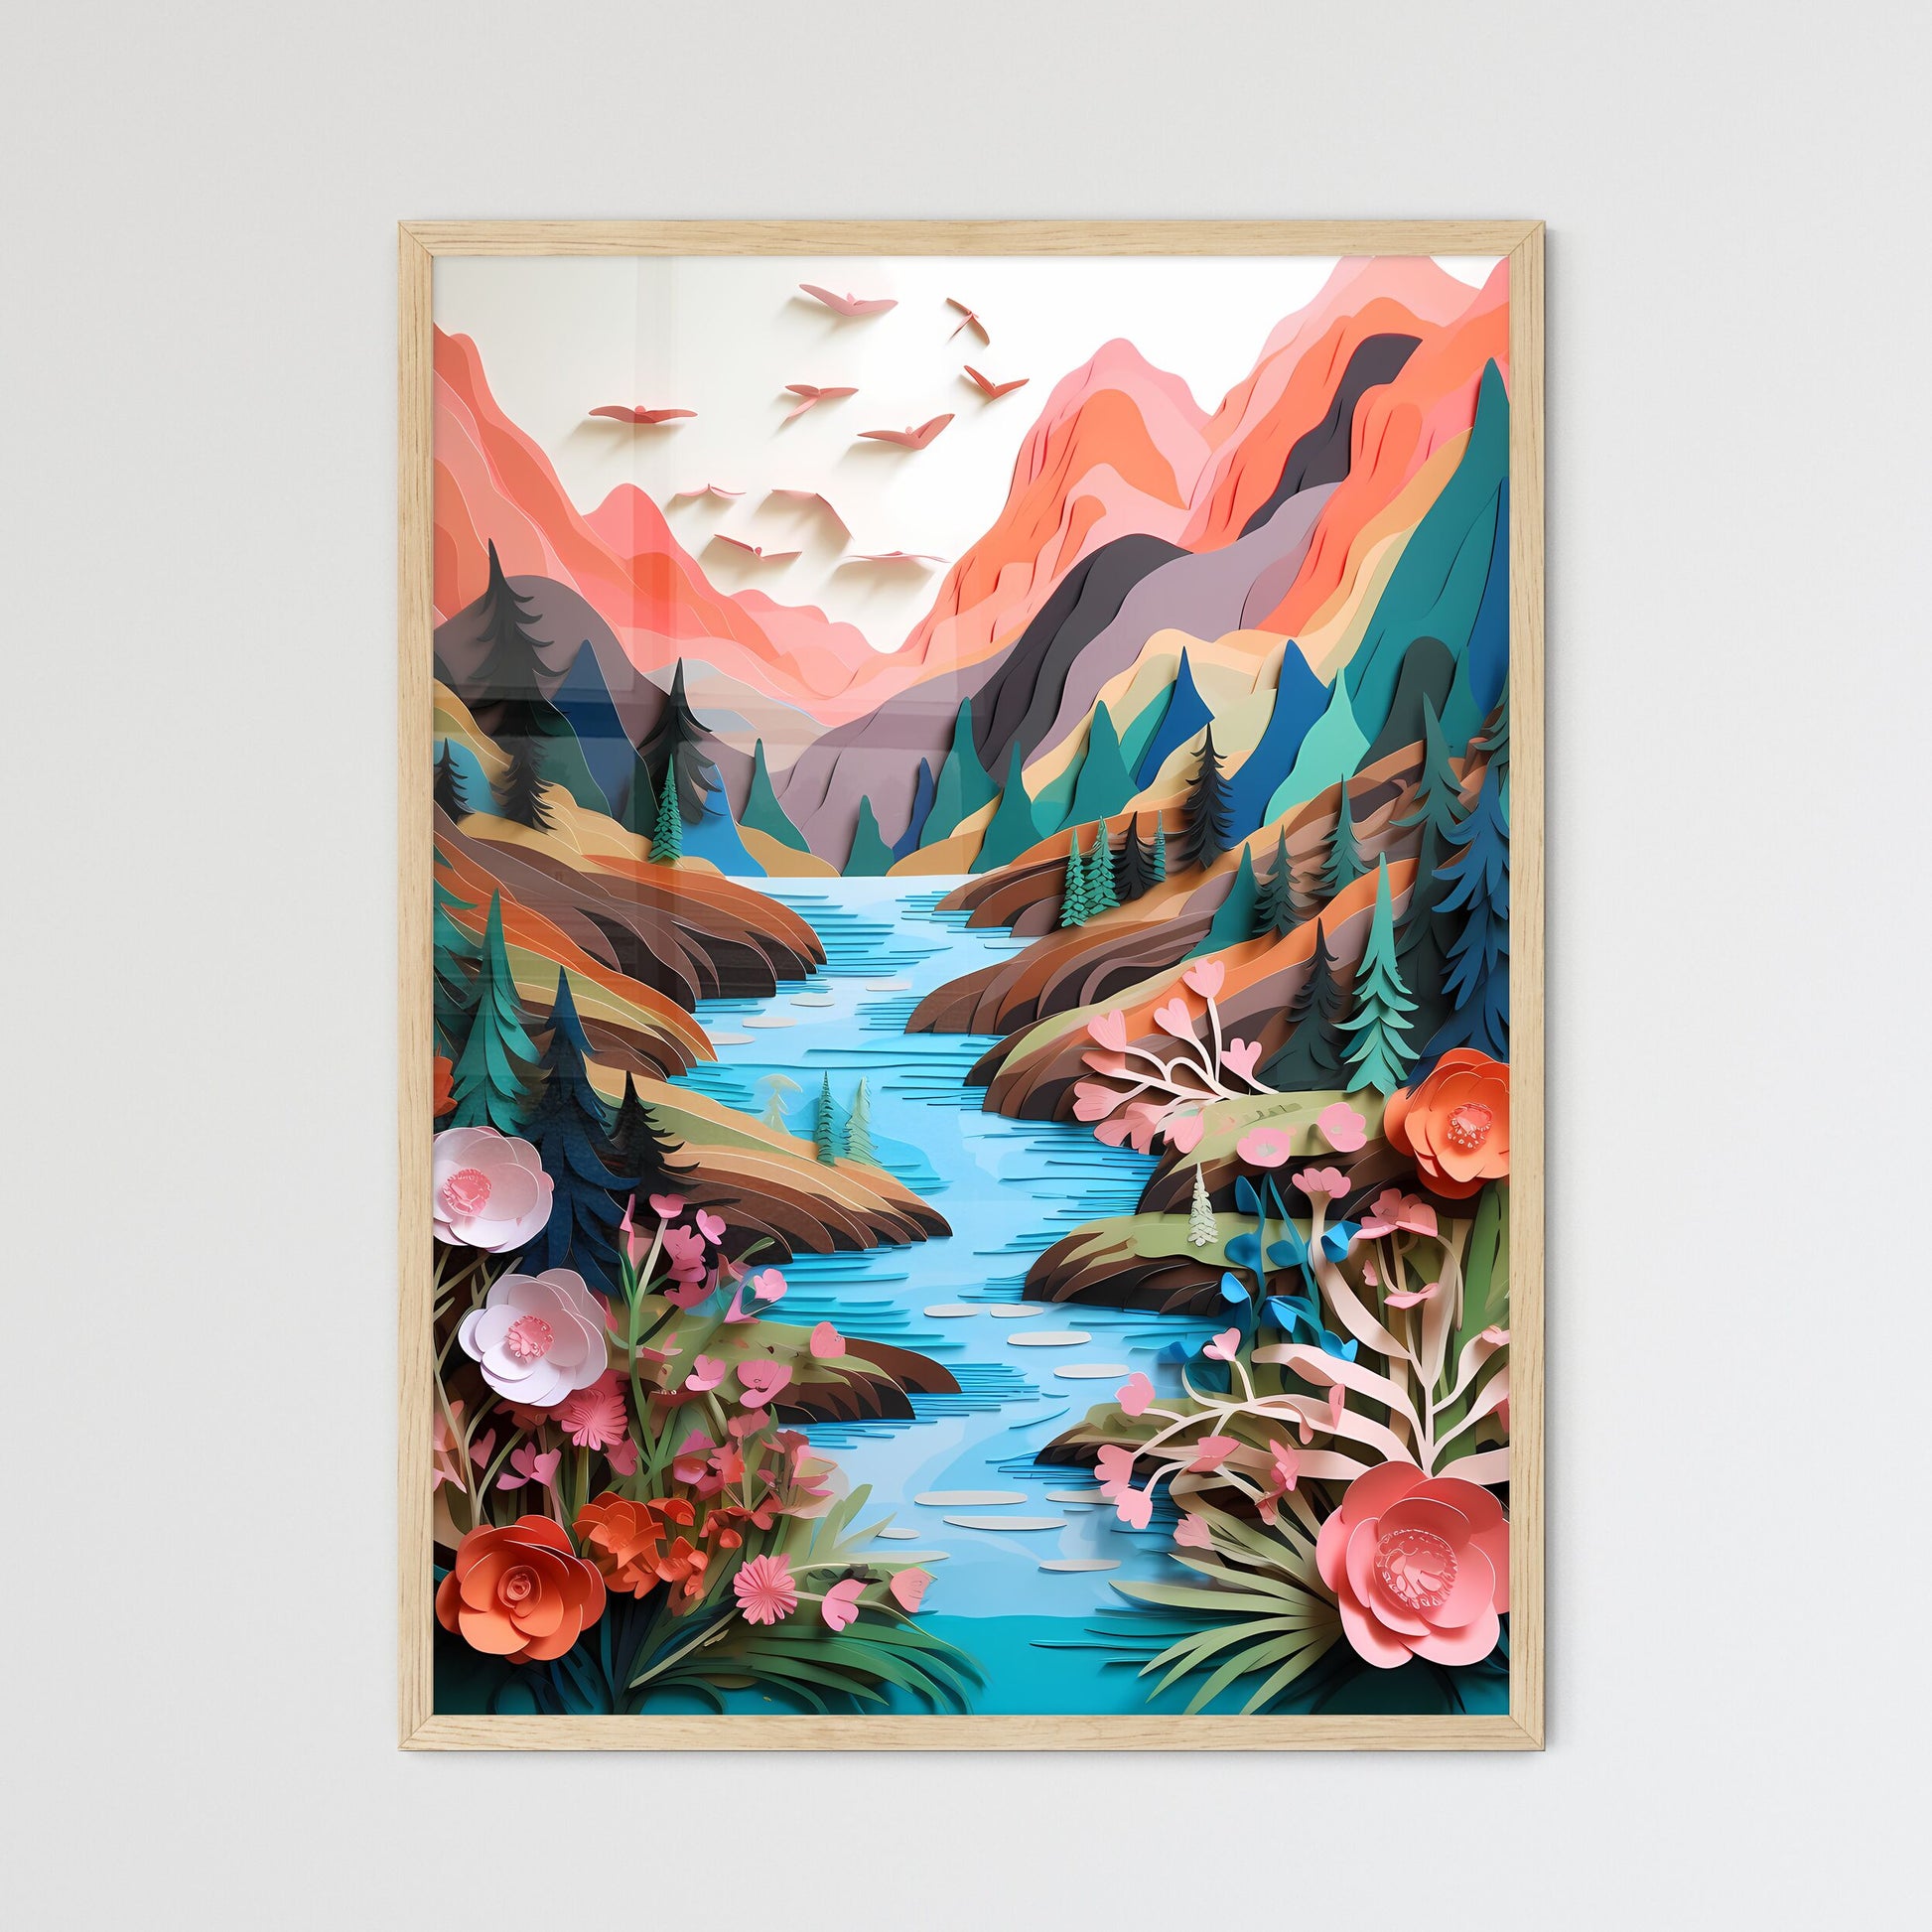 Paper Cut Out Of A River Art Print Default Title